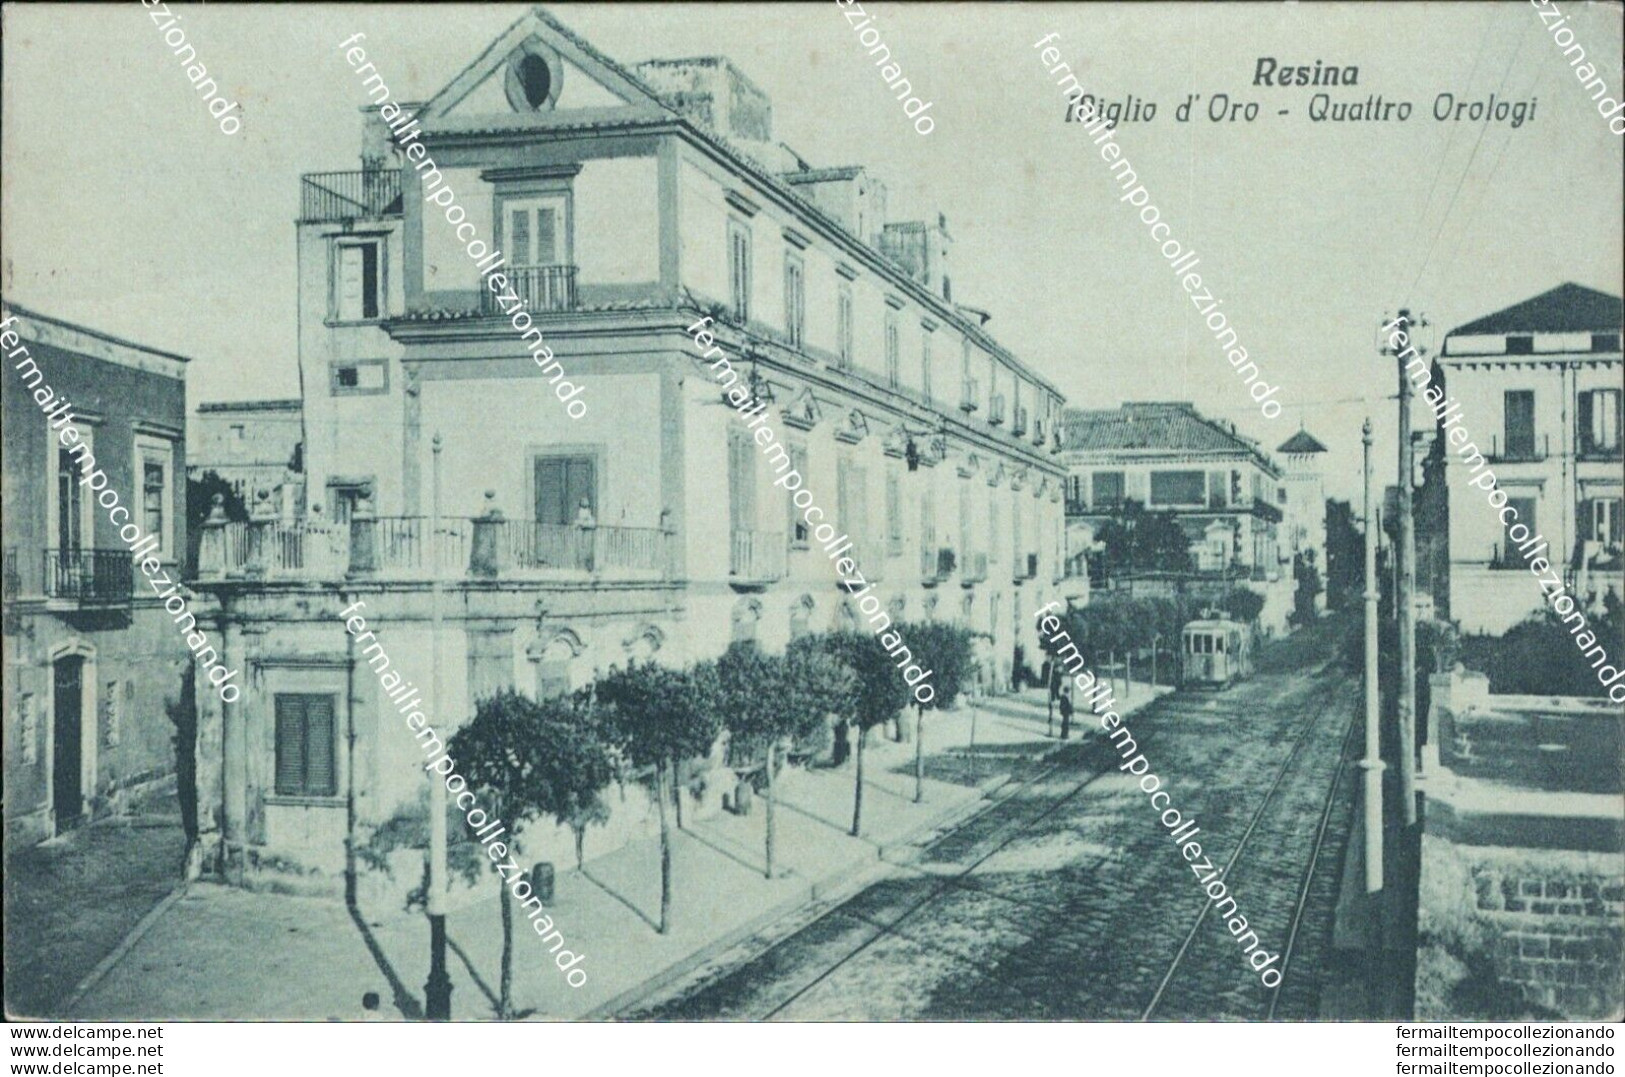 Bh198  Cartolina Resina Miglio D'oro Quattro Orologi Provincia Di Napoli - Napoli (Naples)